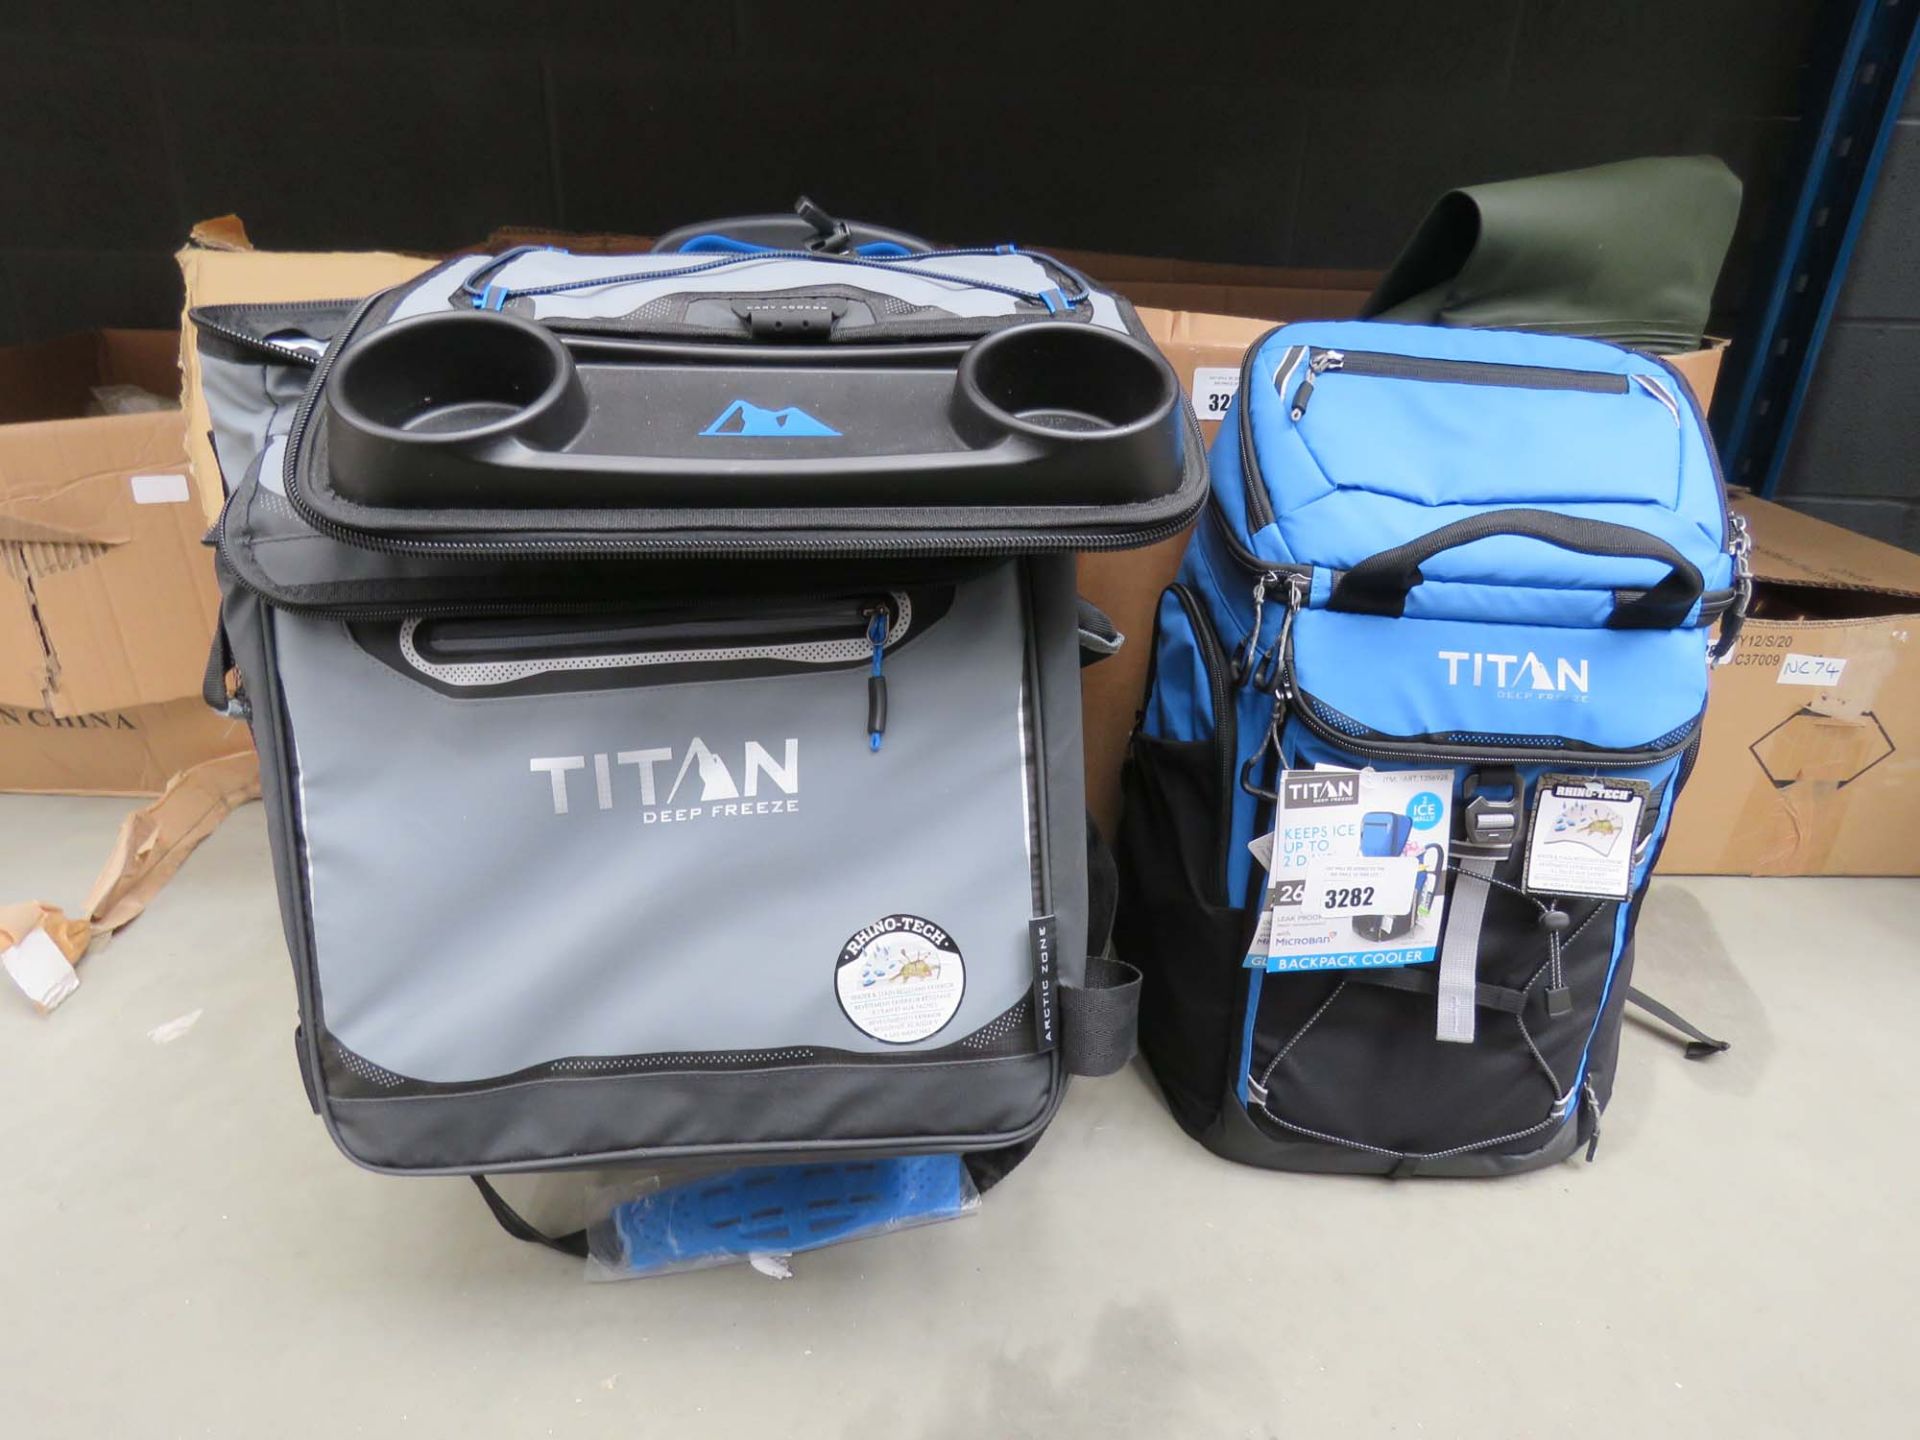 Titan deep freeze backpack plus a Titan deep freeze roller bag